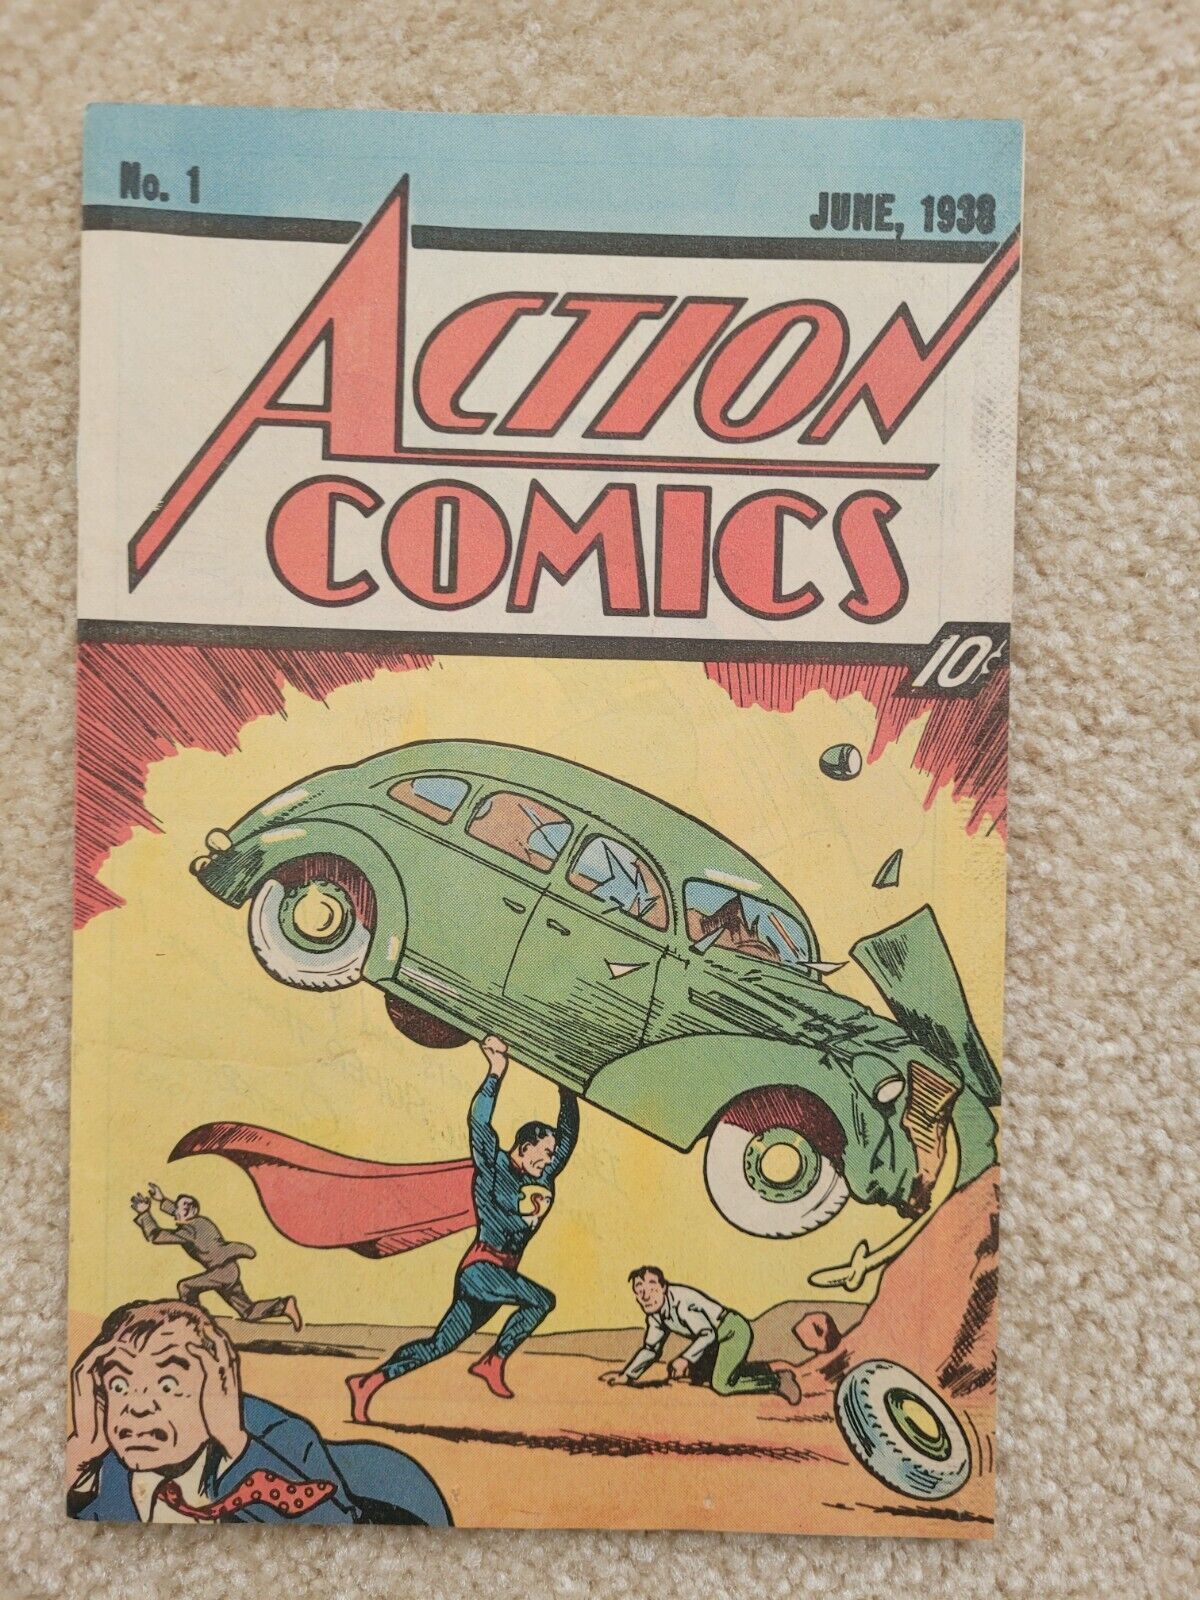 DC Action Comics Superman No. 1 June, 1938 Reprint